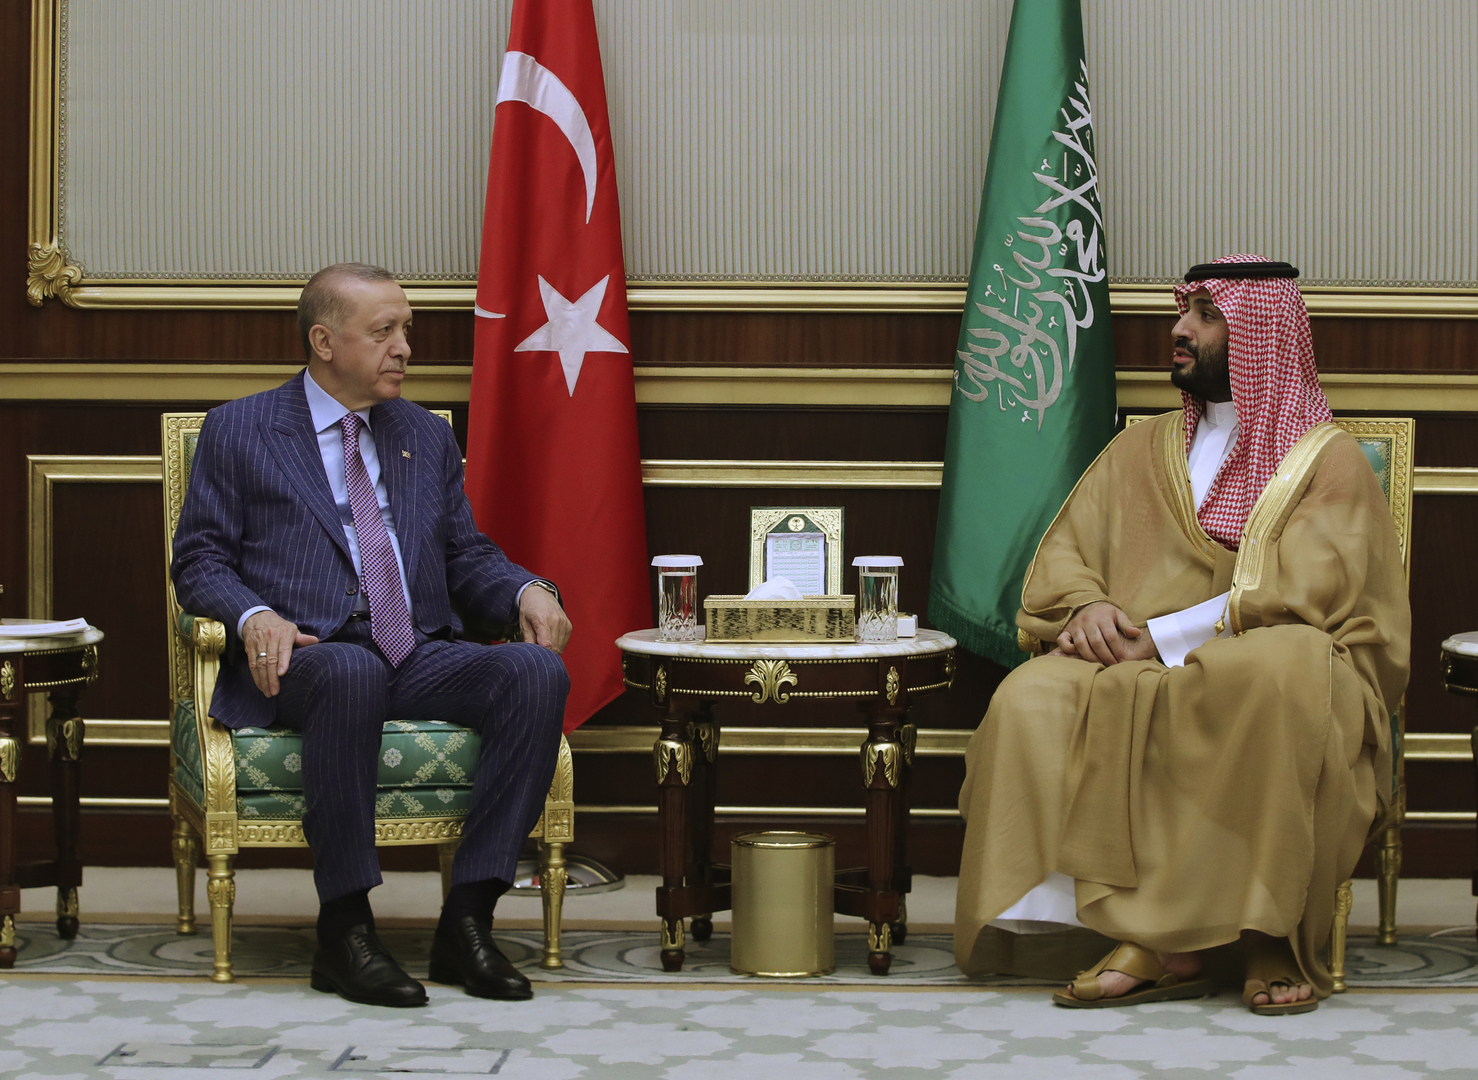 الملك السعودي والأمير محمد بن سلمان يهنئان أردوغان بالنصر